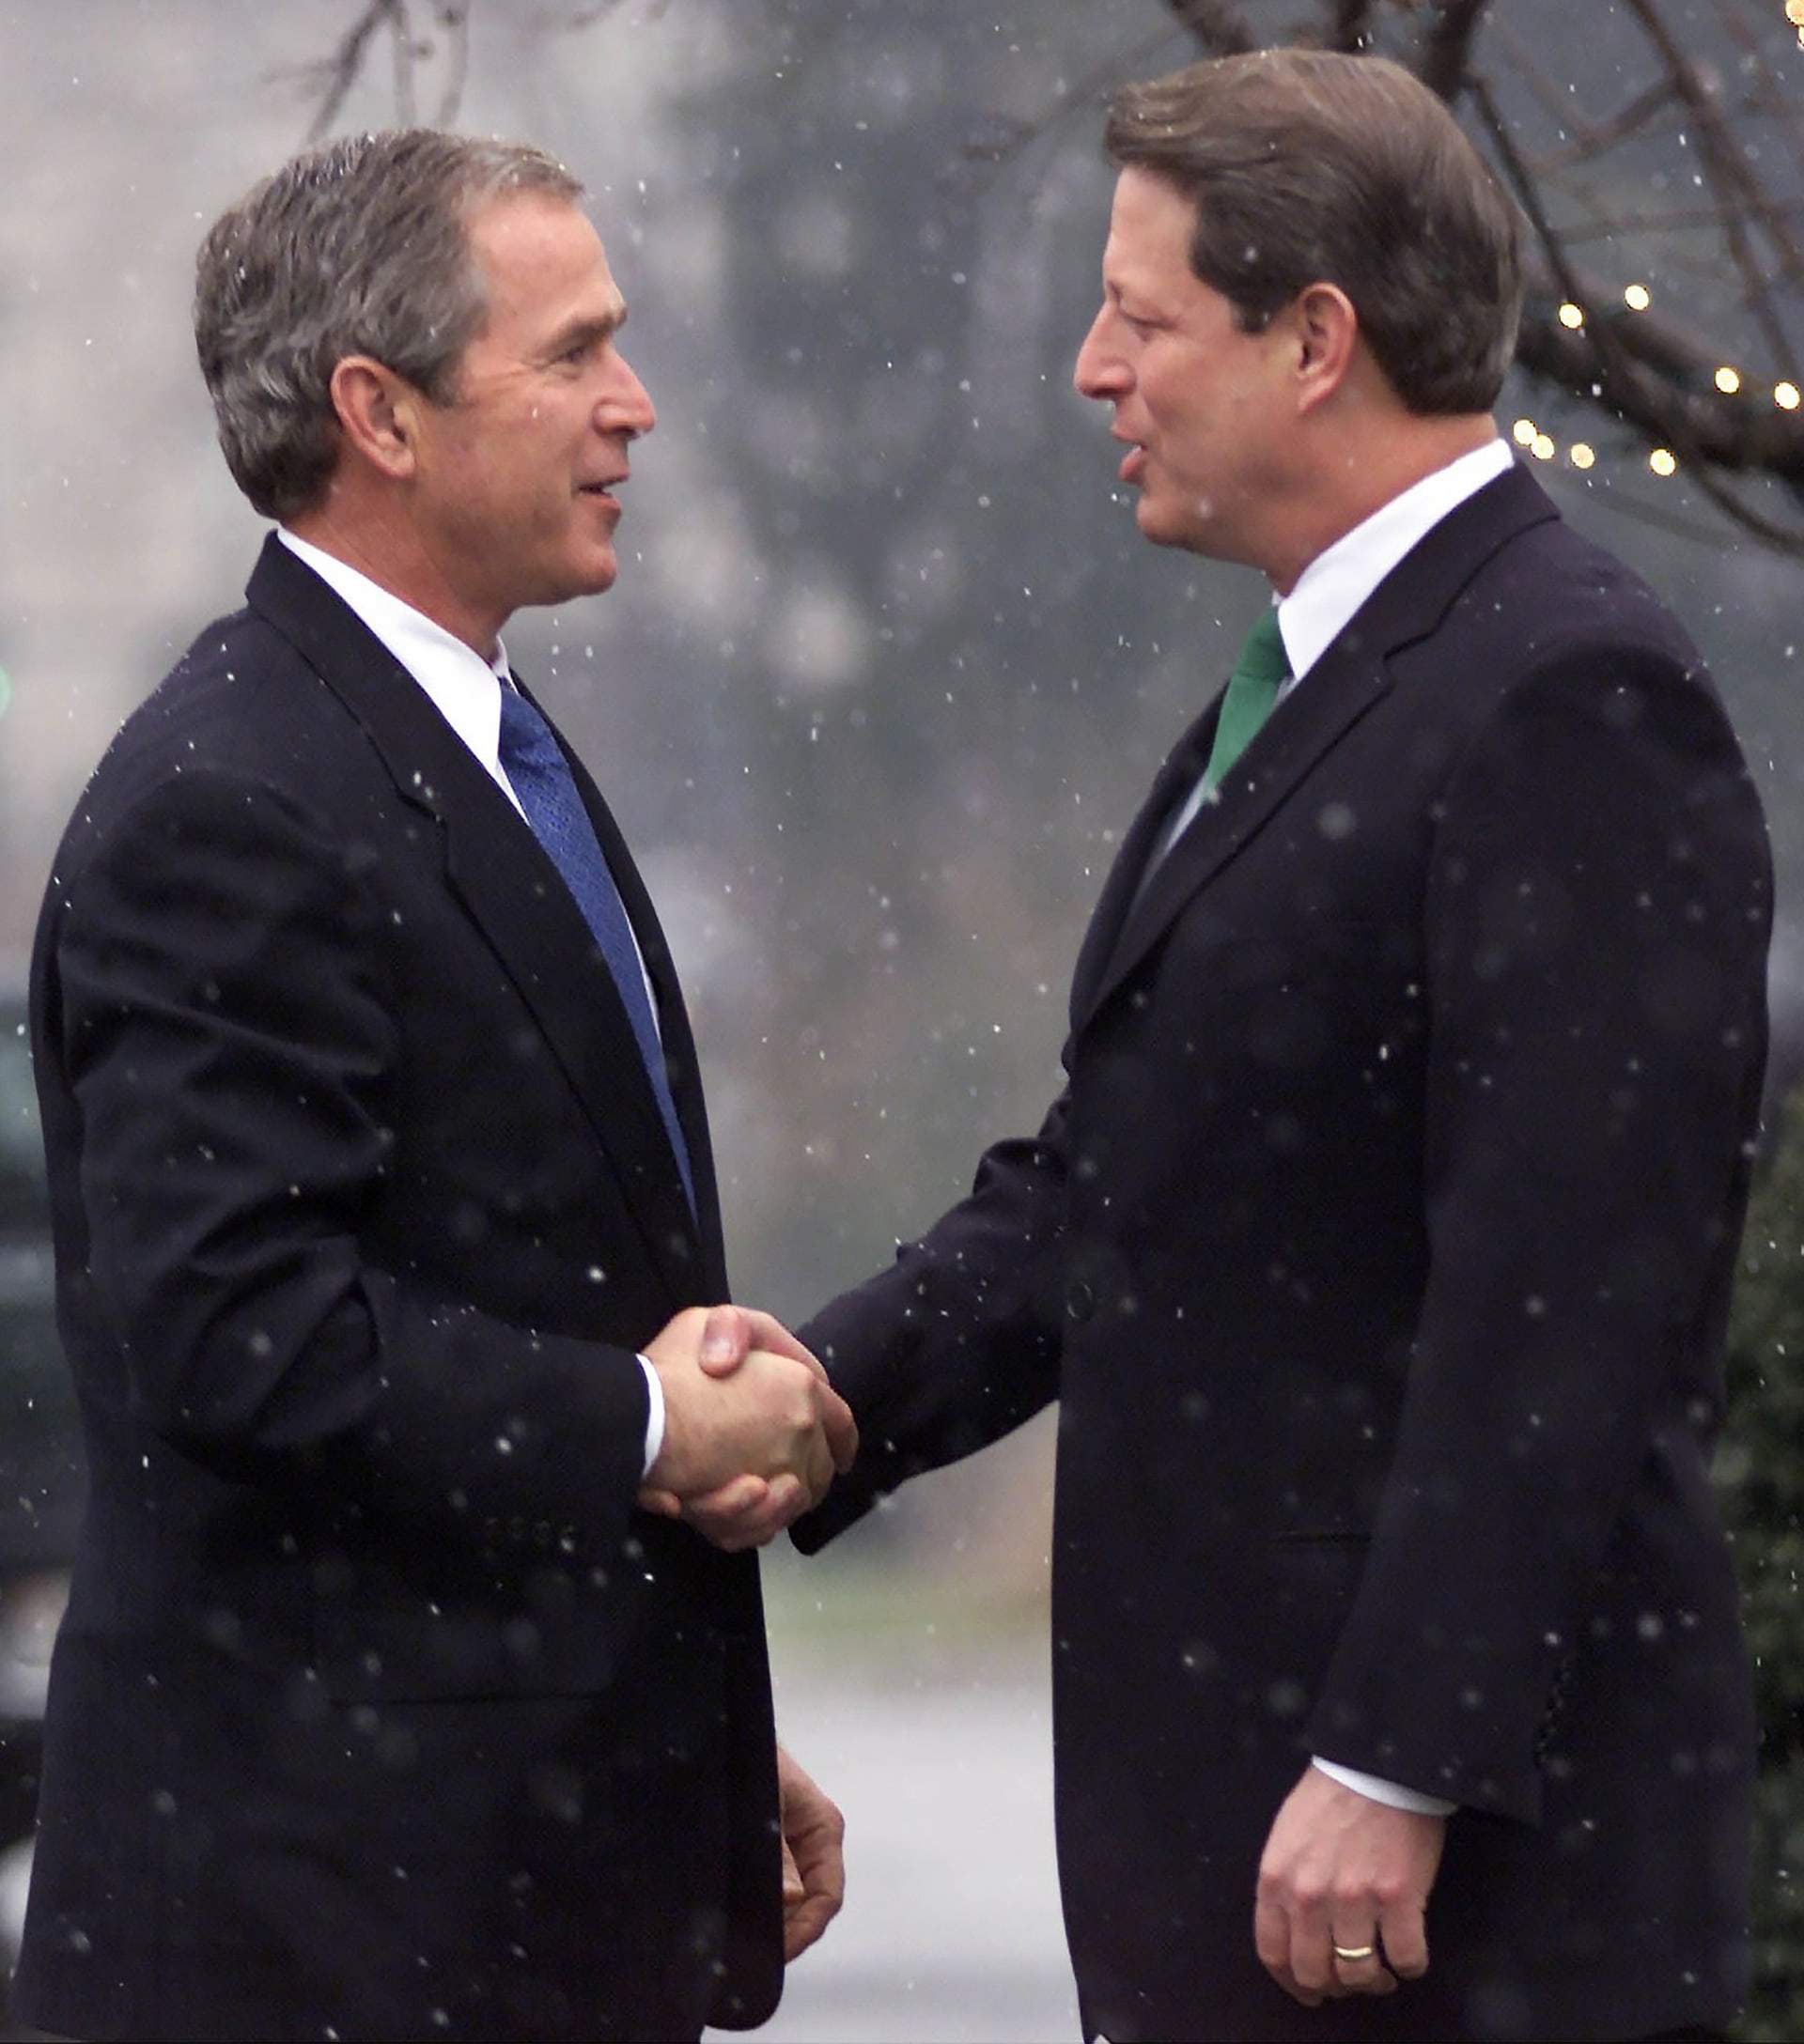 Takřka přesně před dvaceti lety o prezidentovi USA rozhodl podruhé v historii země právě Nejvyšší soud. Jeho verdikt definitivně ukončil volby, ve kterých se utkali dva výrazní kandidáti - George W. Bush a Al Gore.